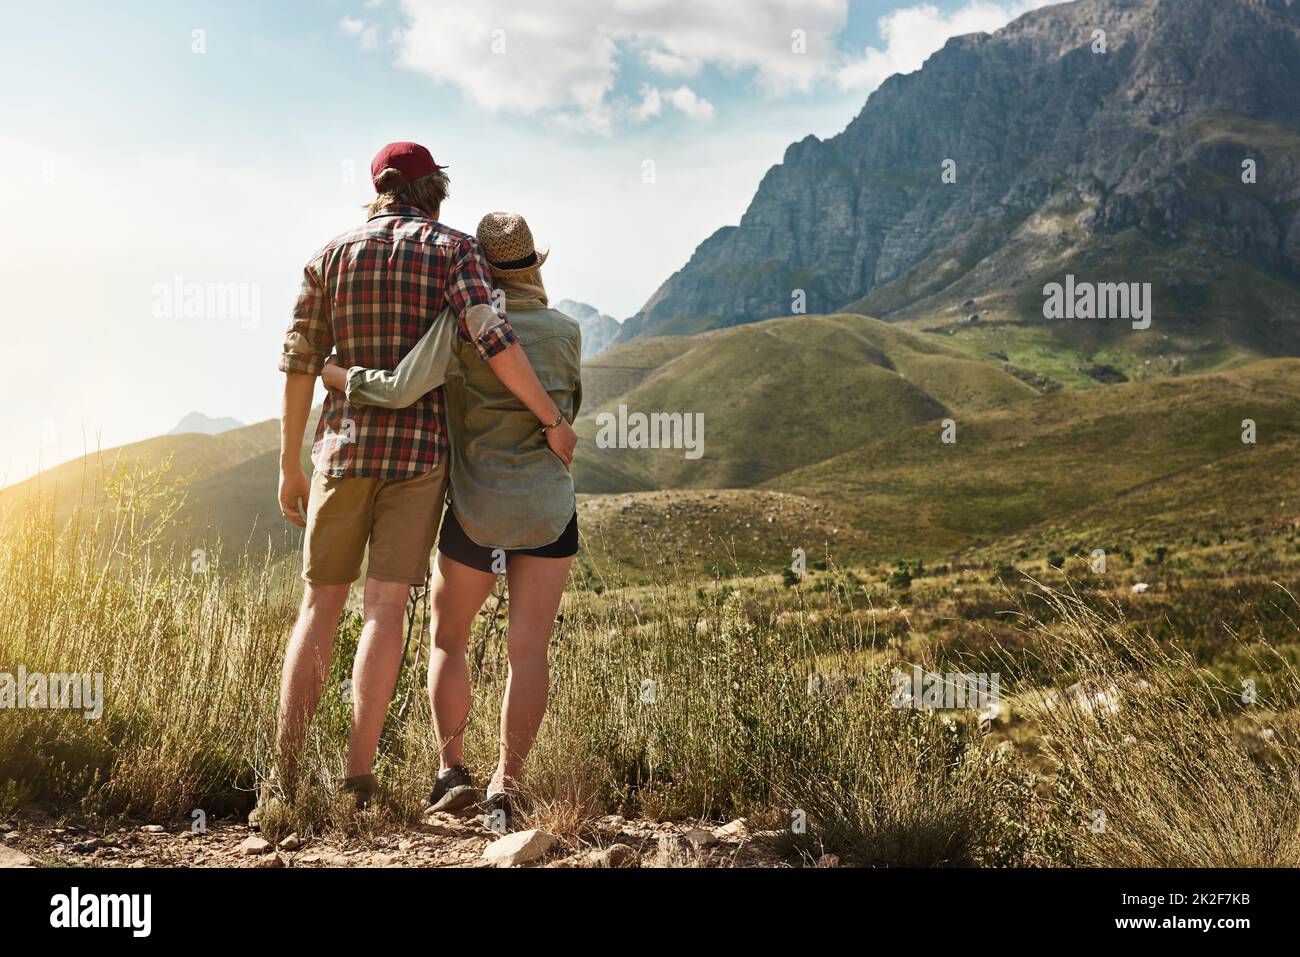 Amore ispirato alla bellezza della natura. Foto retrostenibile di una giovane coppia ammirando una vista montagnosa nella natura. Foto Stock